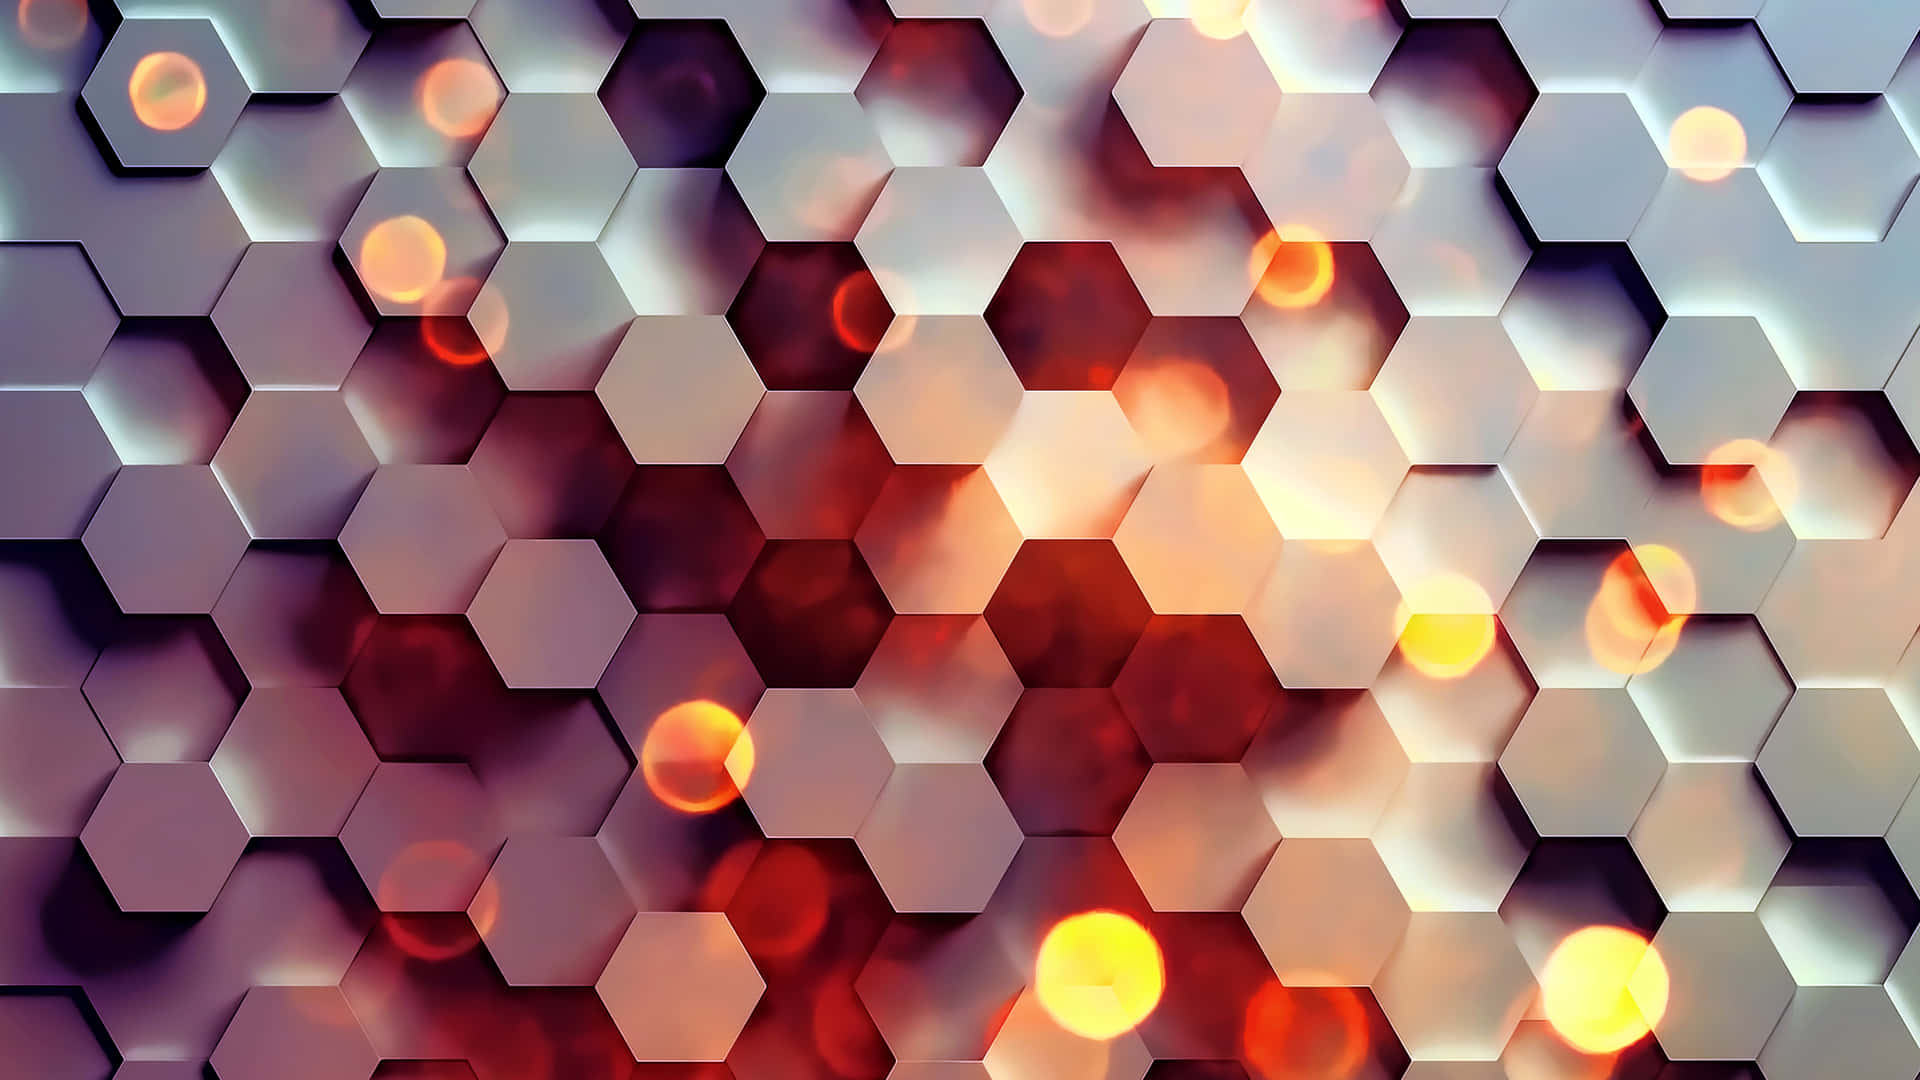 Utforskaabstrakta Mönster Med Hexagon 4k Som Bakgrundsbild På Din Dator Eller Mobiltelefon. Wallpaper